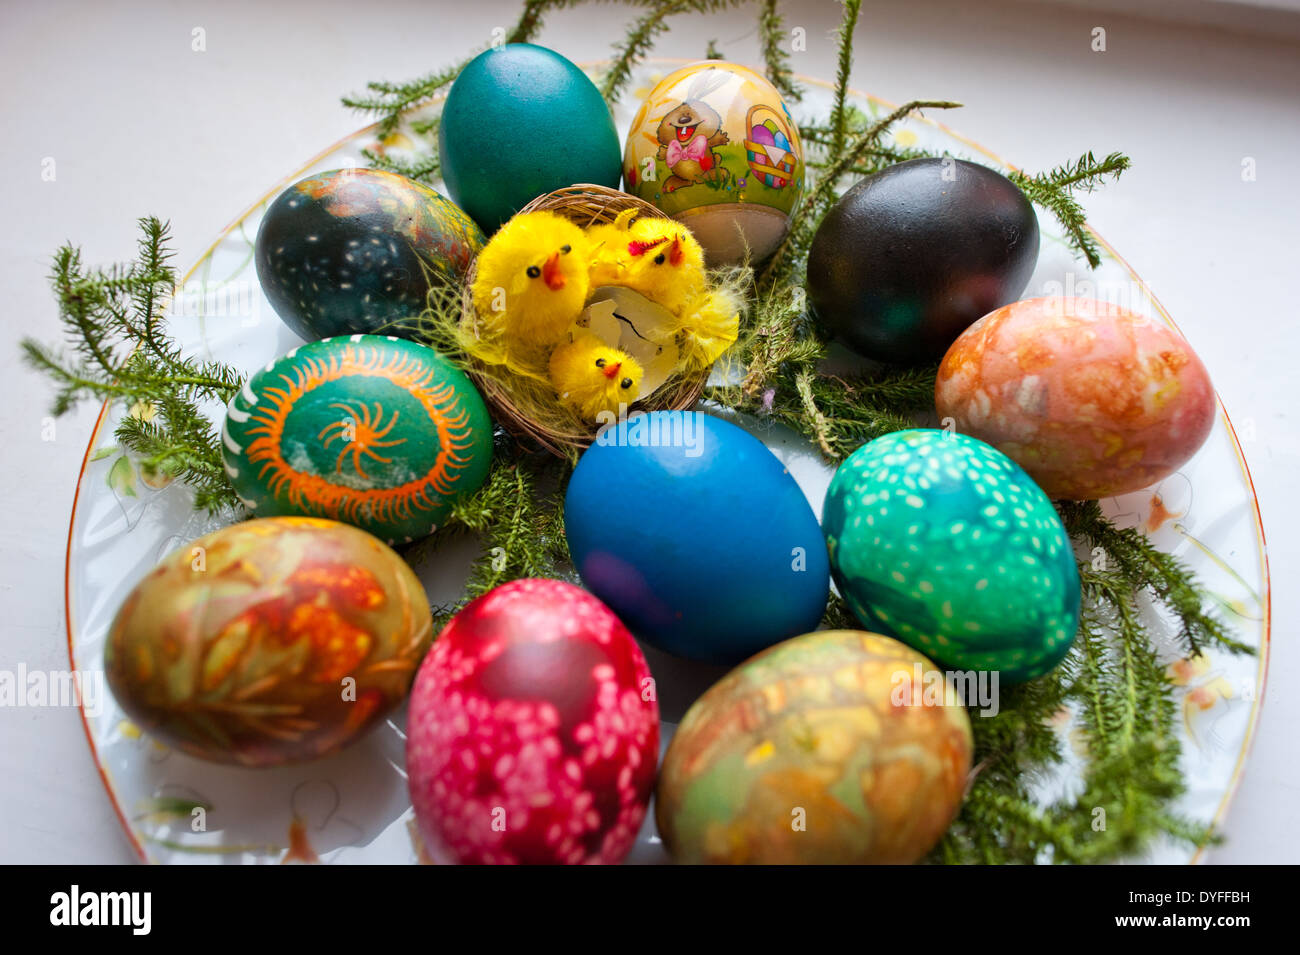 Tradizionali uova di pasqua o uova pasquale, decorate con punto di ebollizione nel colorante, con cipolla bucce e semi di lino. Foto Stock